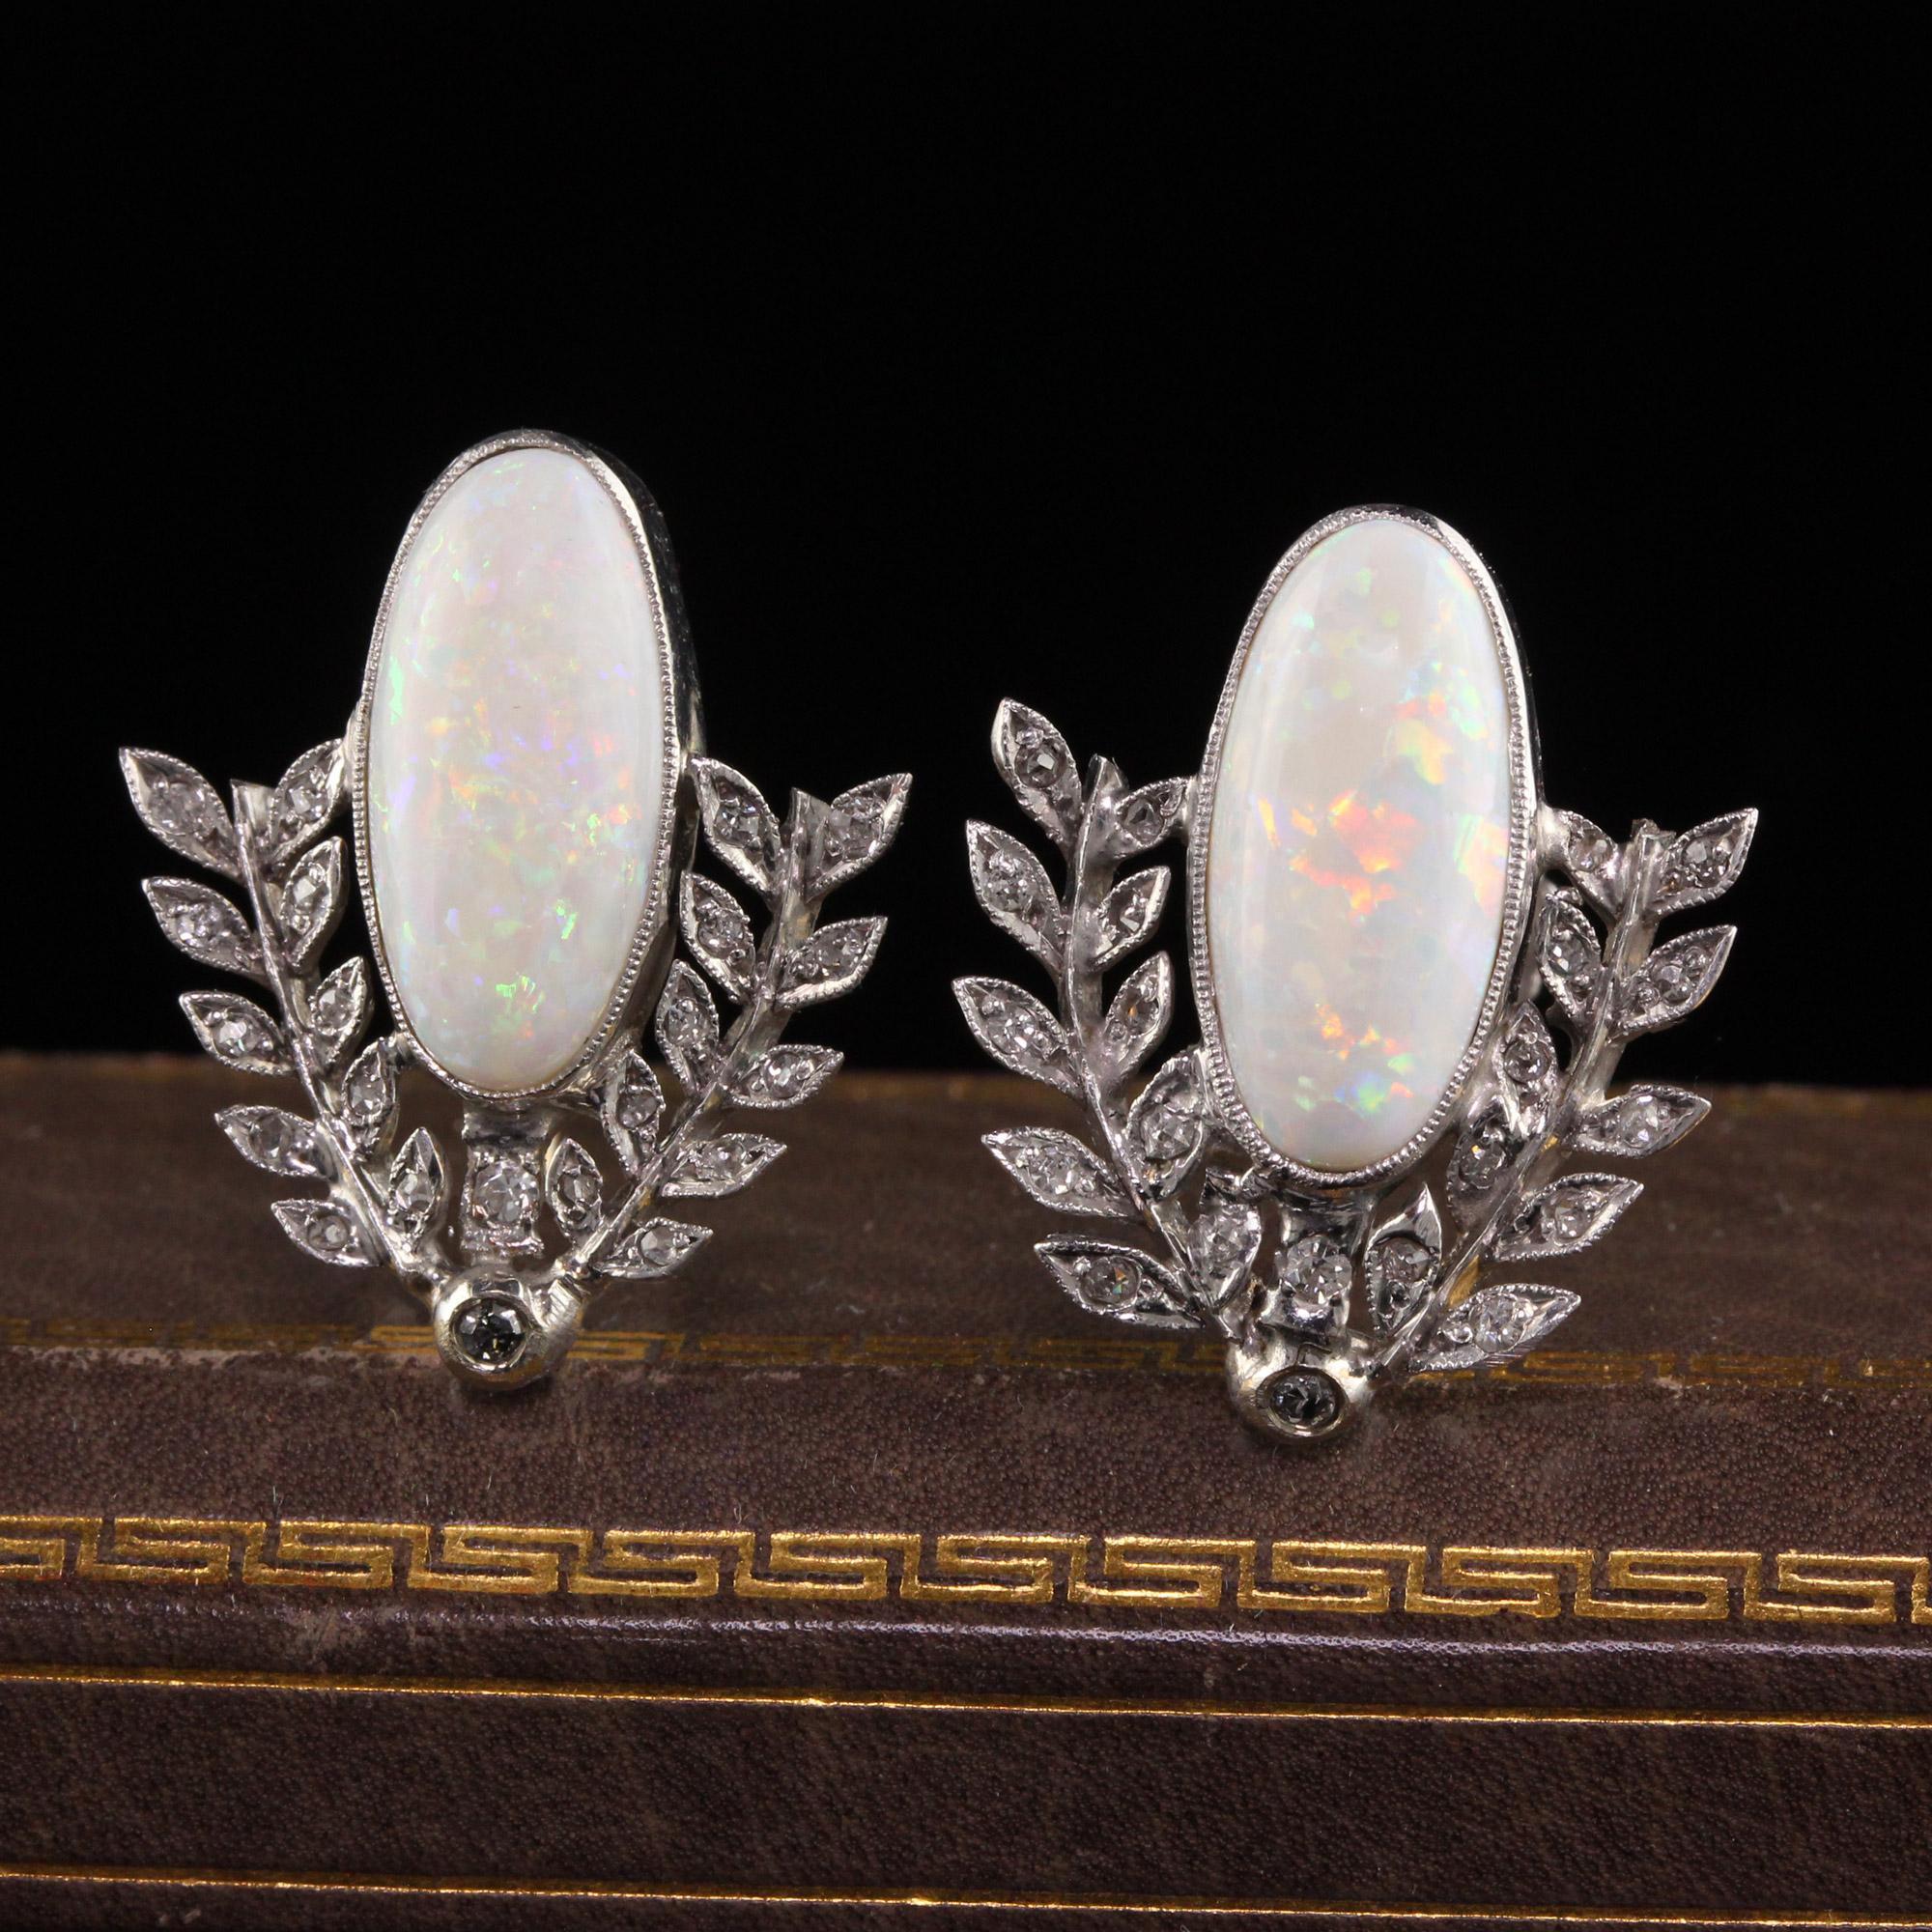 Schöne antike Art Deco 18K Weißgold Opal und Diamant Kranz Ohrringe. Dieses wunderschöne Paar Ohrringe ist aus 10k und 18k Weißgold gefertigt. Die Ohrringe enthalten wunderschöne ovale Cabochon-Opale mit einem herrlichen Farbenspiel, umgeben von